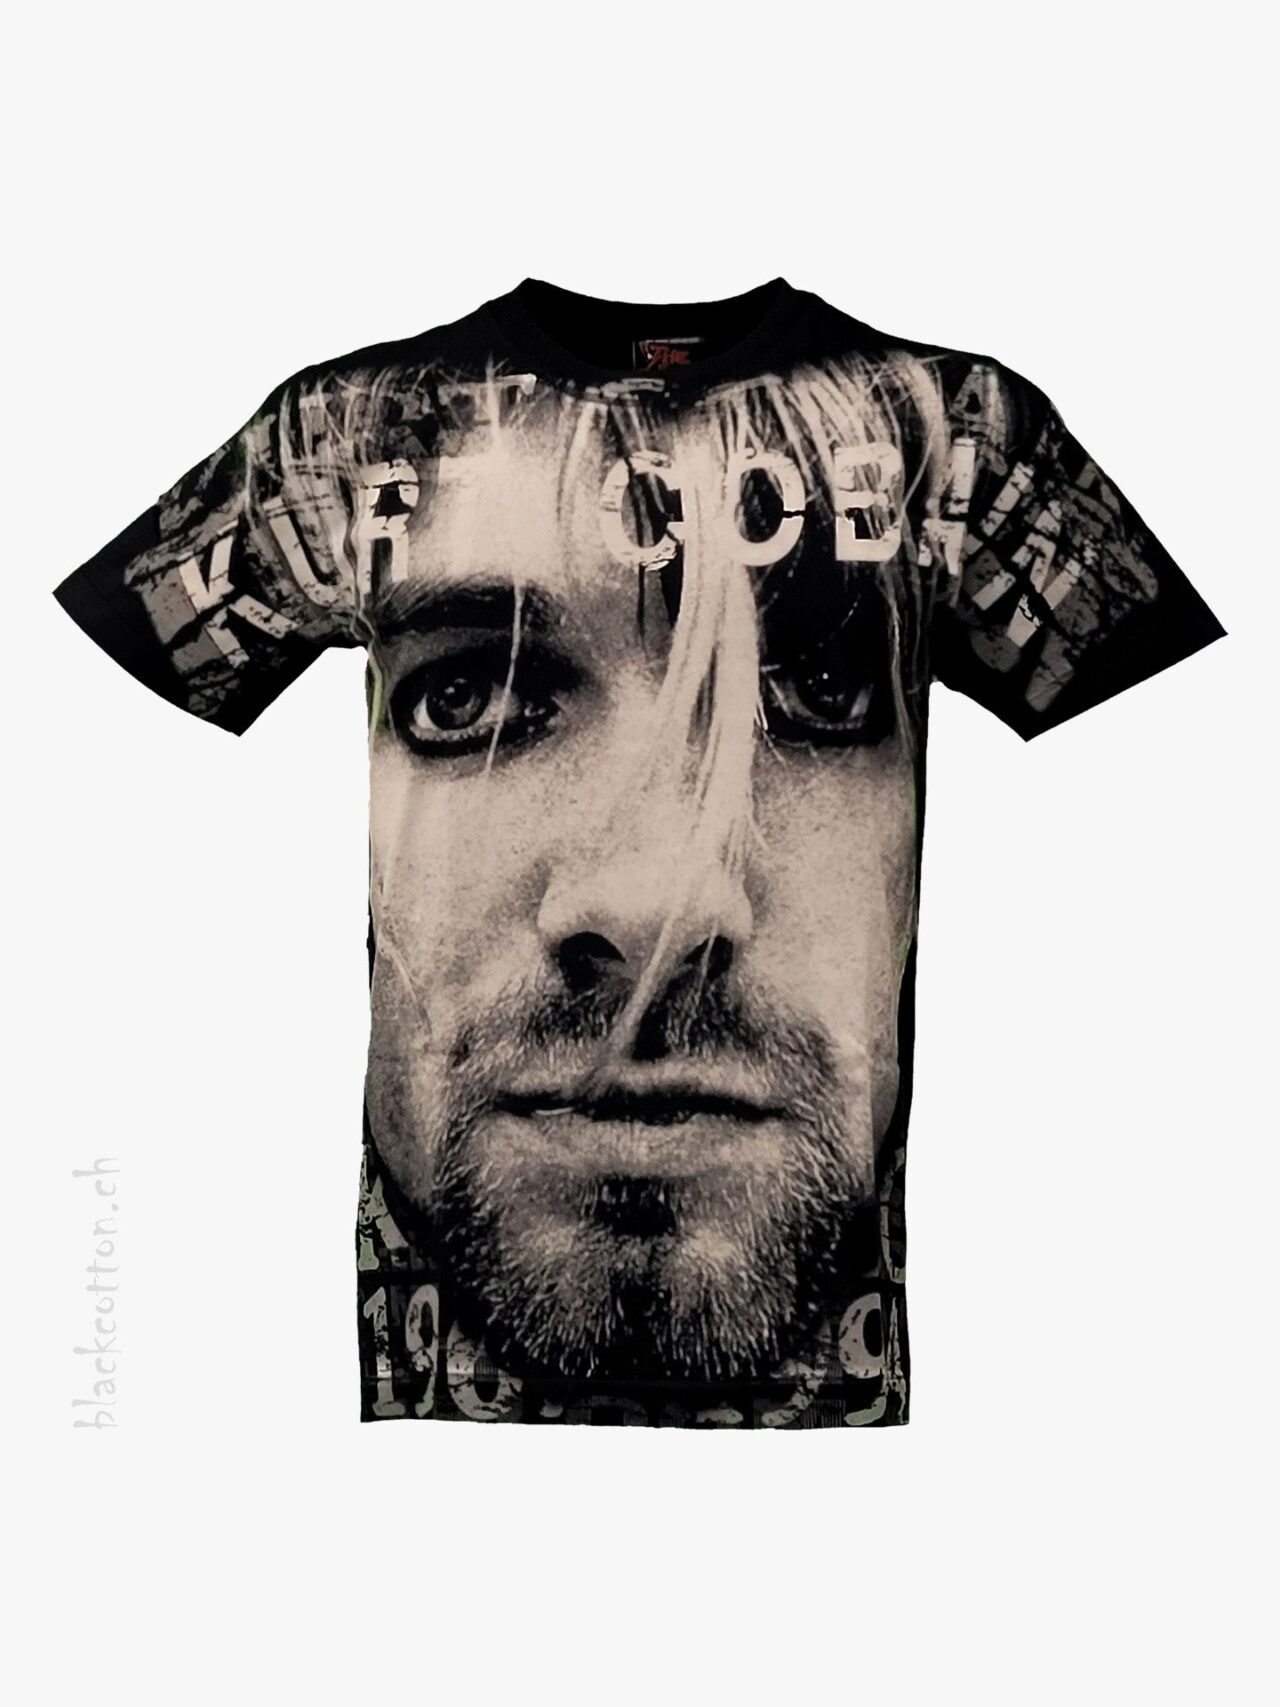 Nirvana - Kurt Cobain 1967-1994 T-Shirt